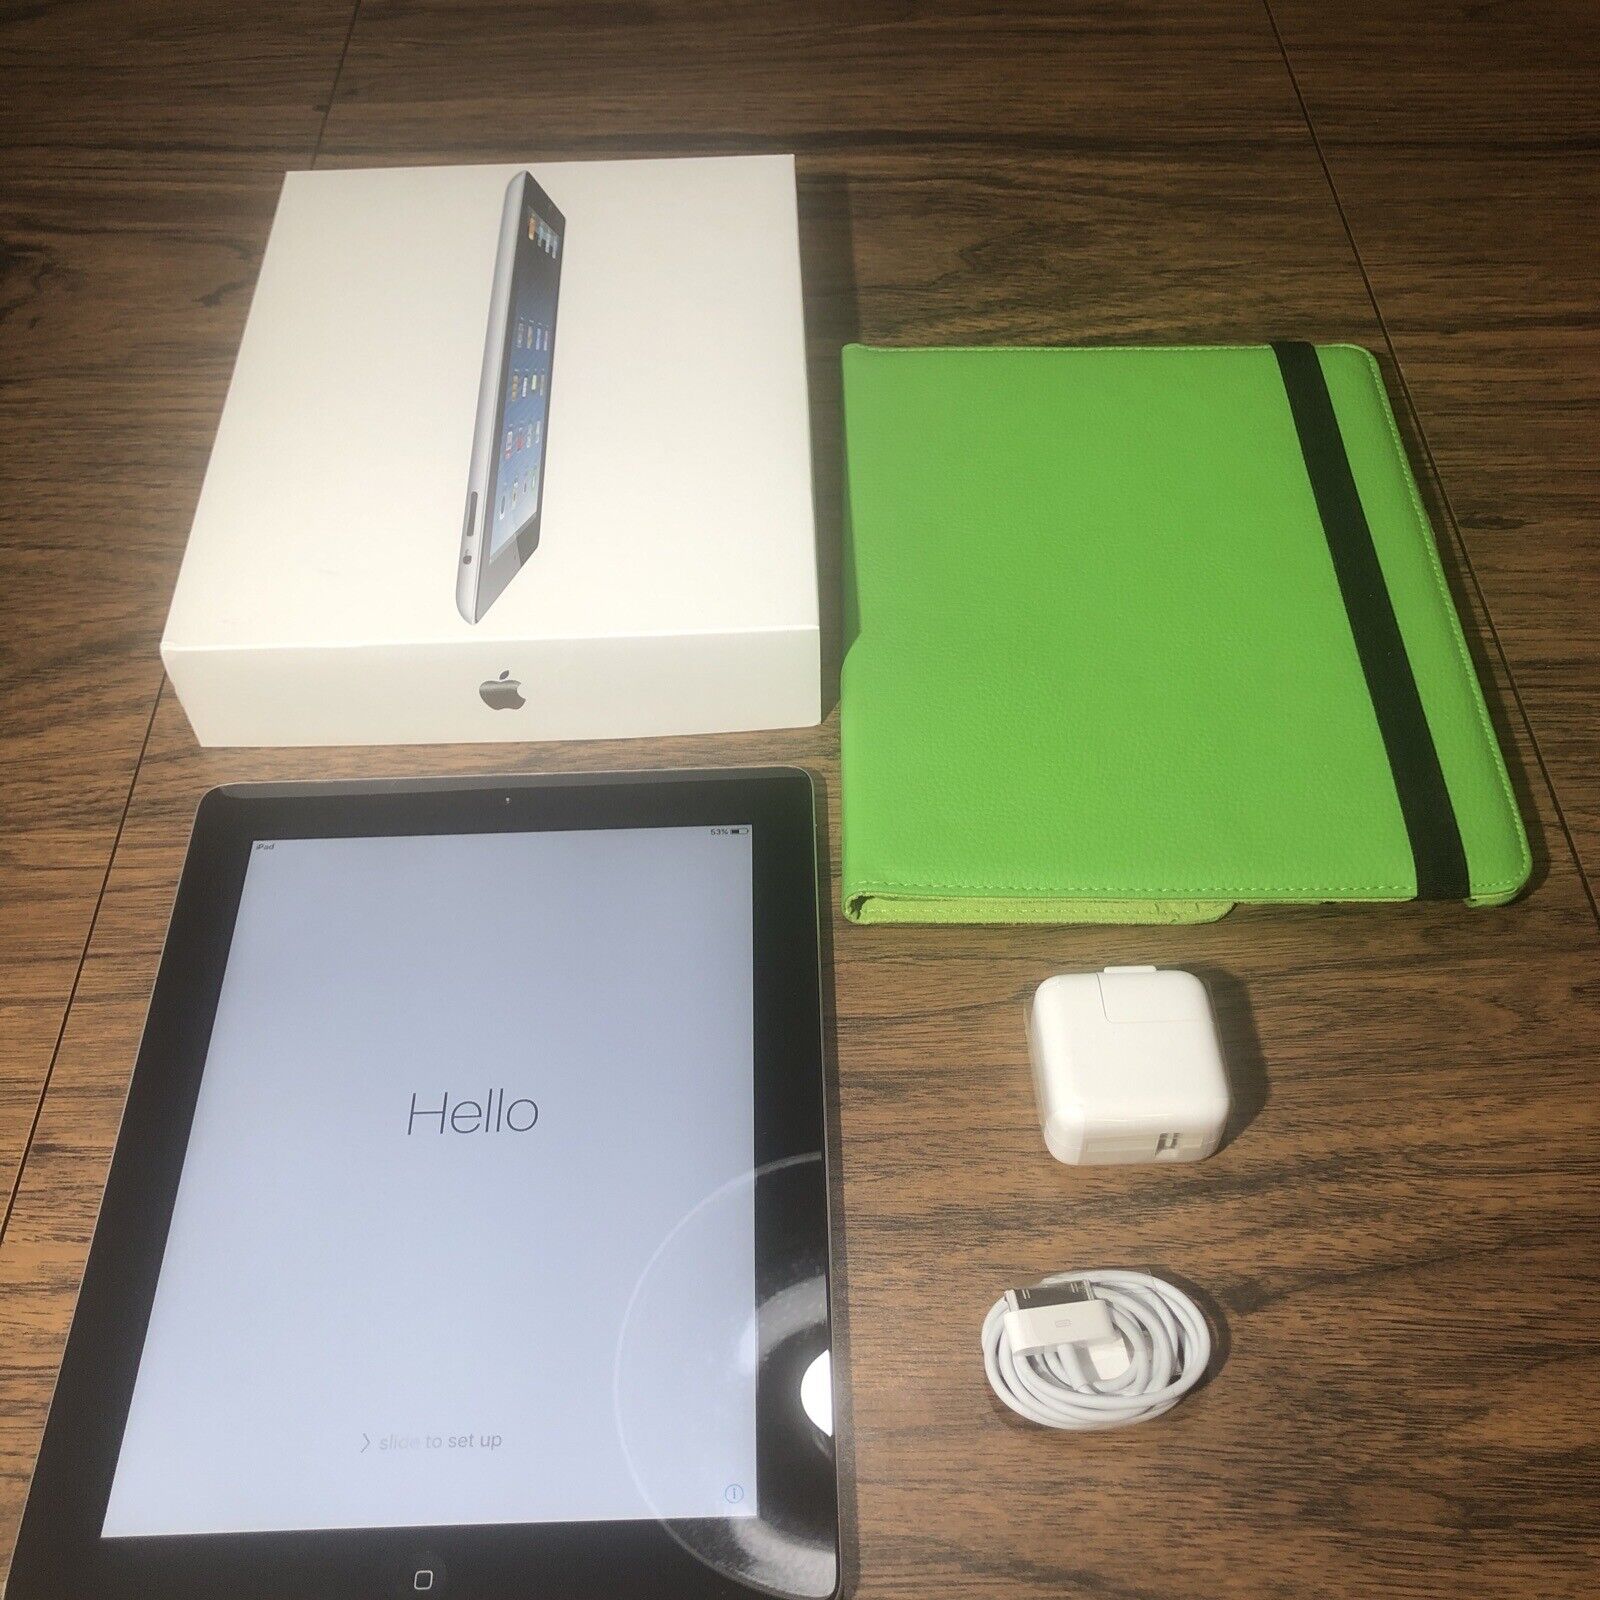 Apple iPad 2 (A1395) 16GB Wi-Fi MC954LL/A Factory Black Silver OEM Box Bundle